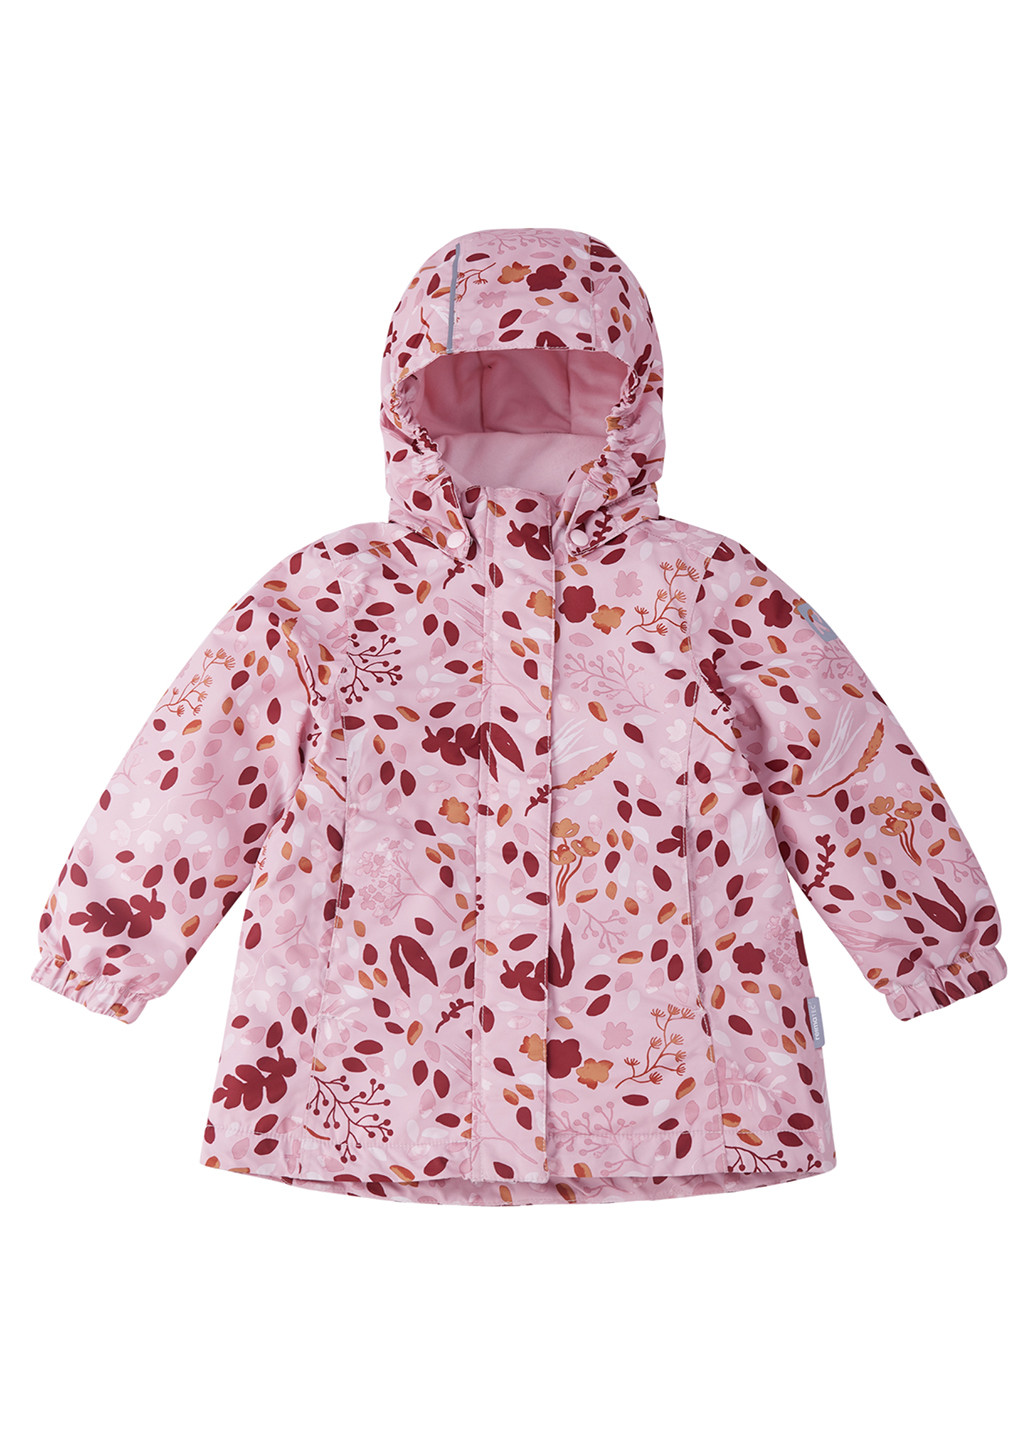 Розовая зимняя куртка зимняя Reima Toki